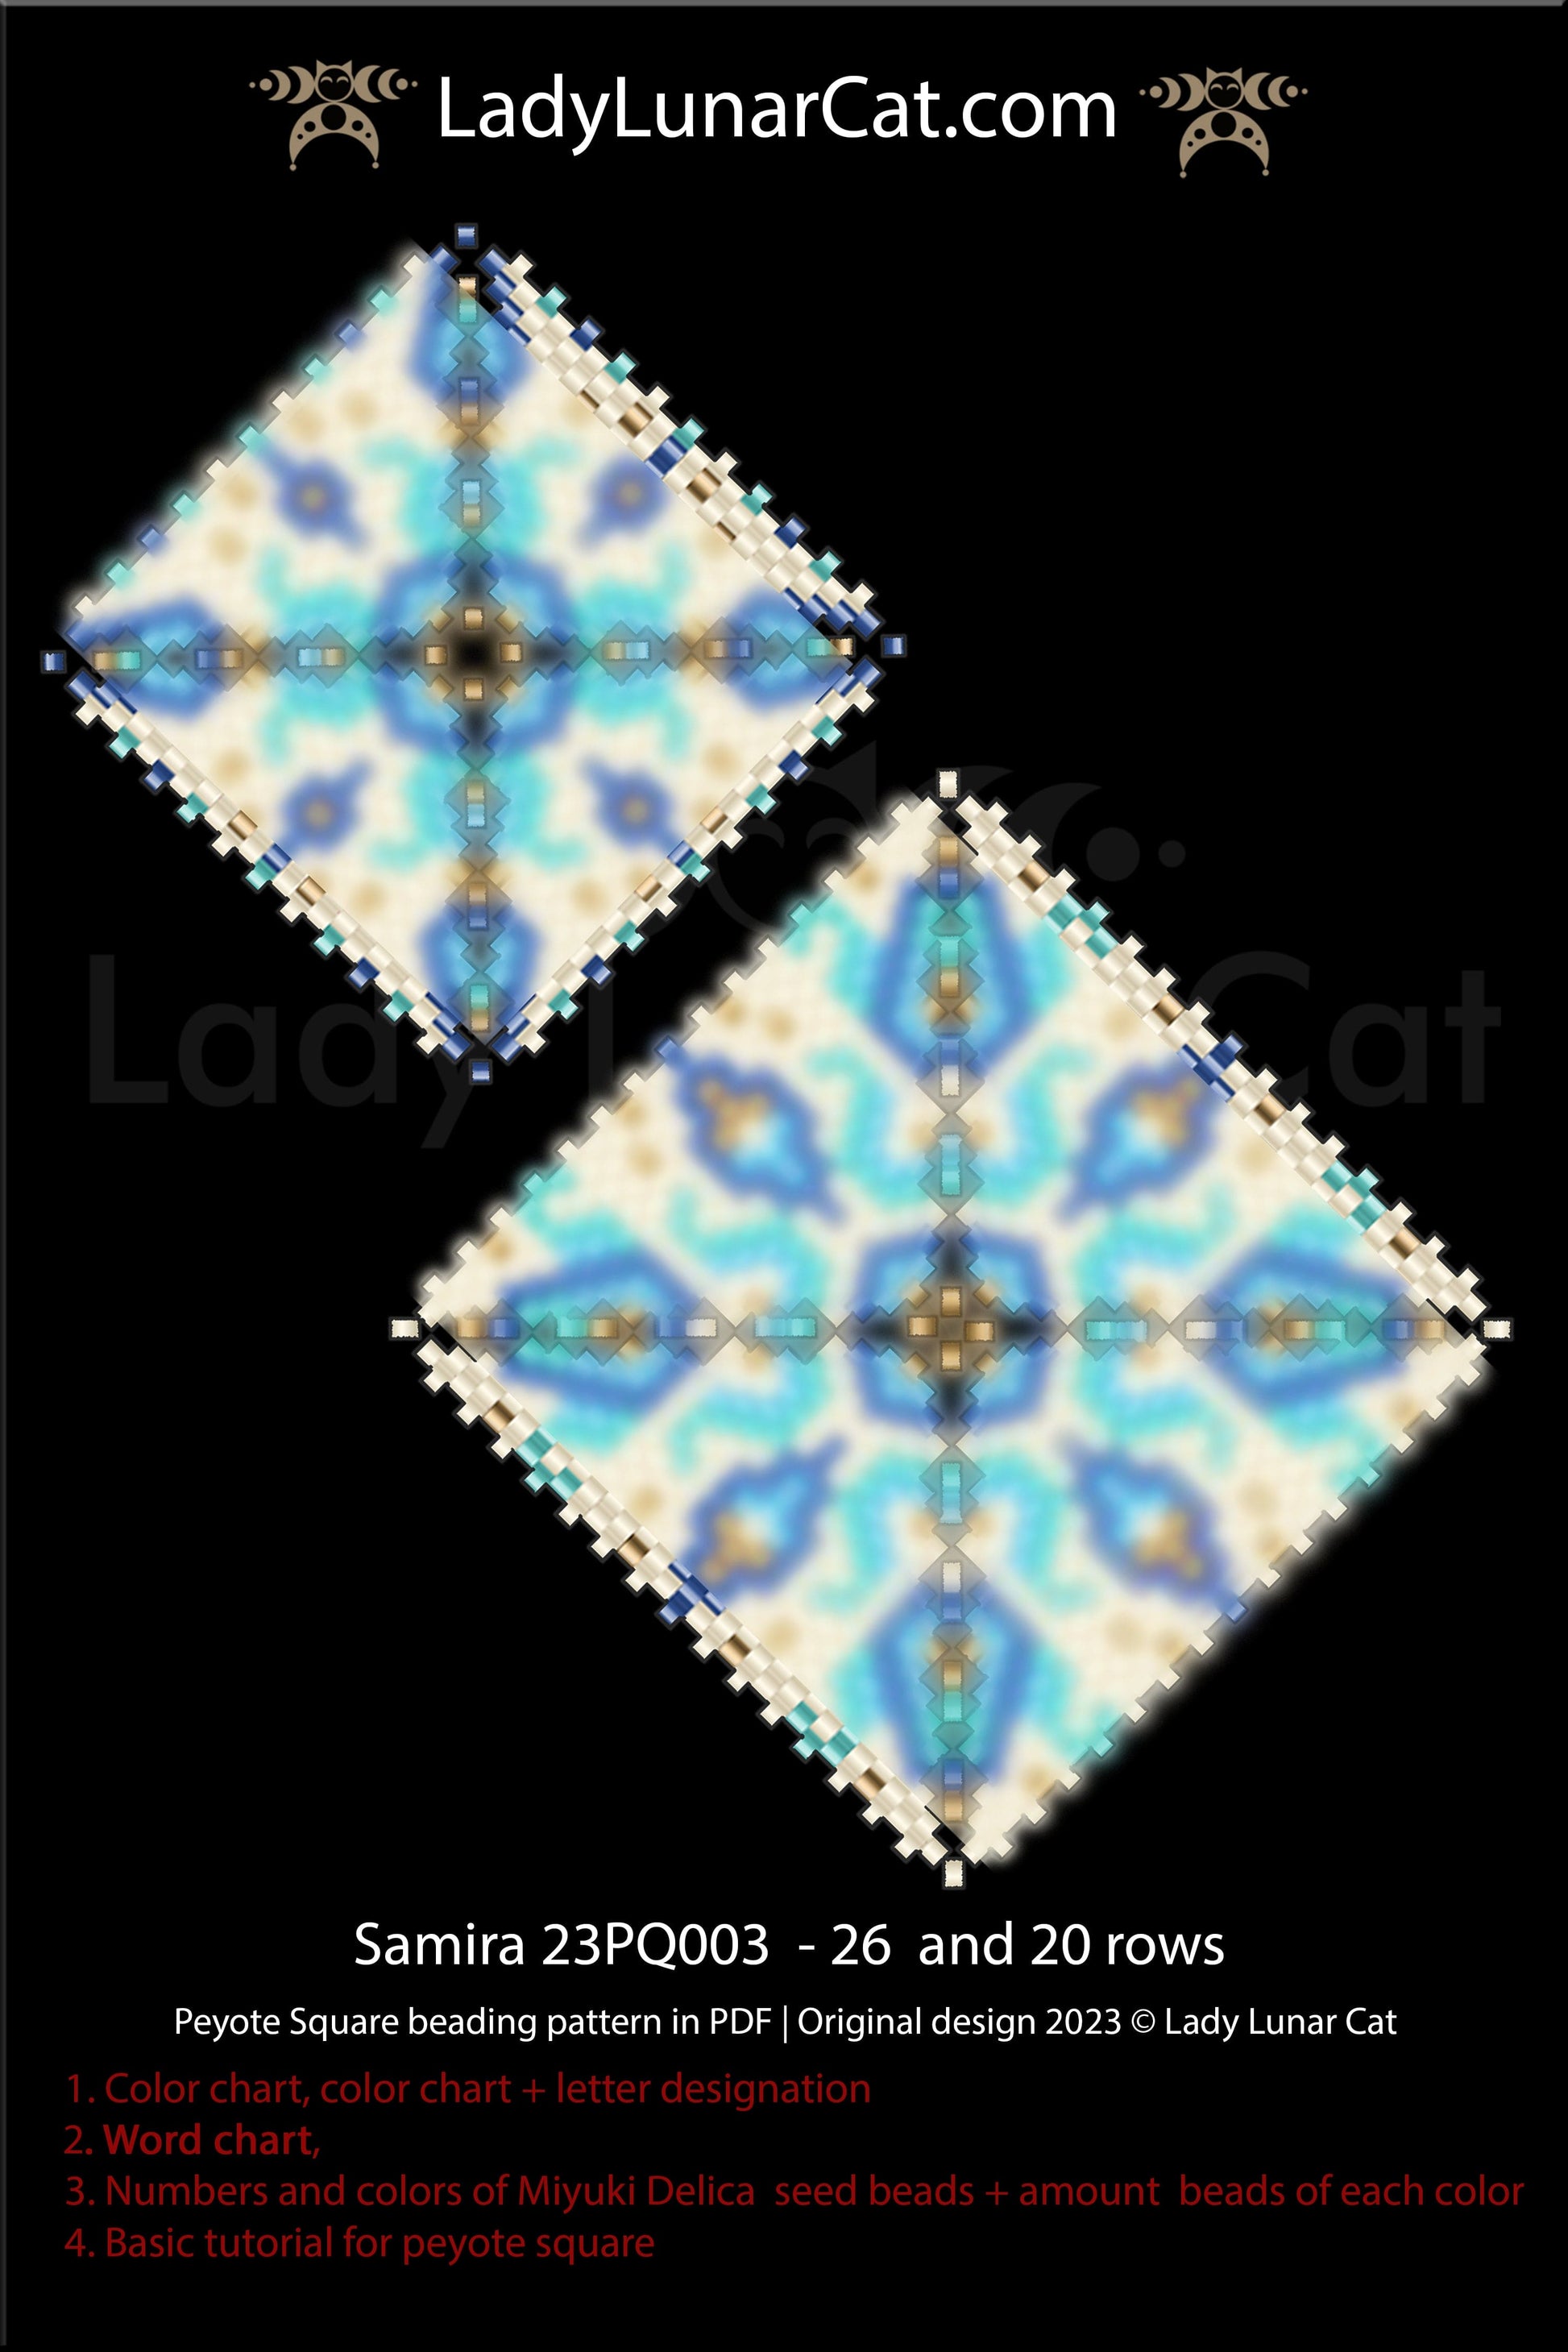 Peyote square pattern for beading Samira 23PQ003 LadyLunarCat